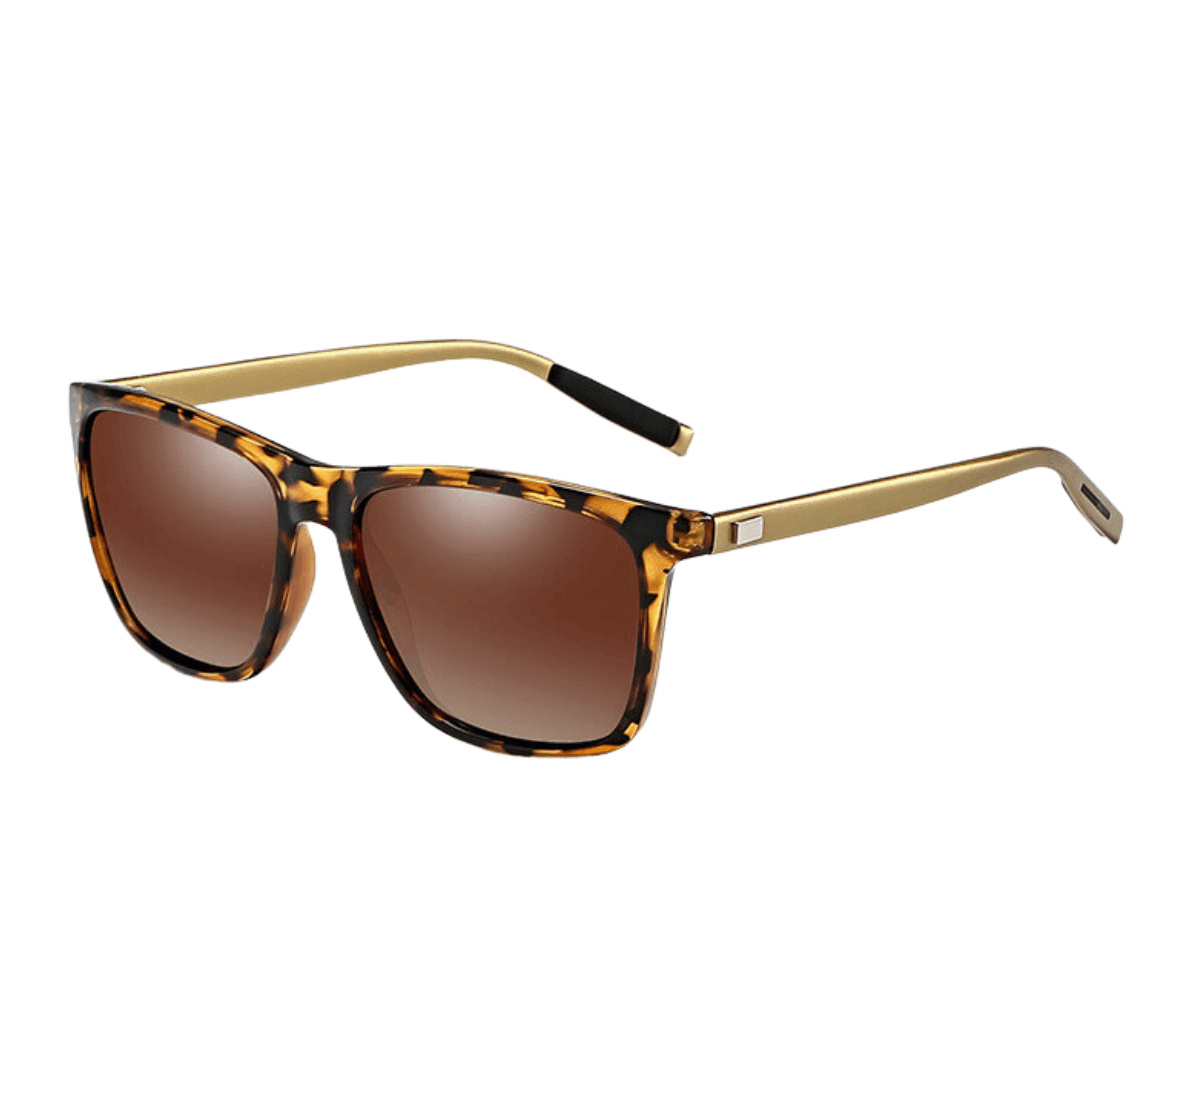 polarized wholesale sunglasses, brown square polarized sunglasses China, bulk polarized sunglasses, sunglasses supplier